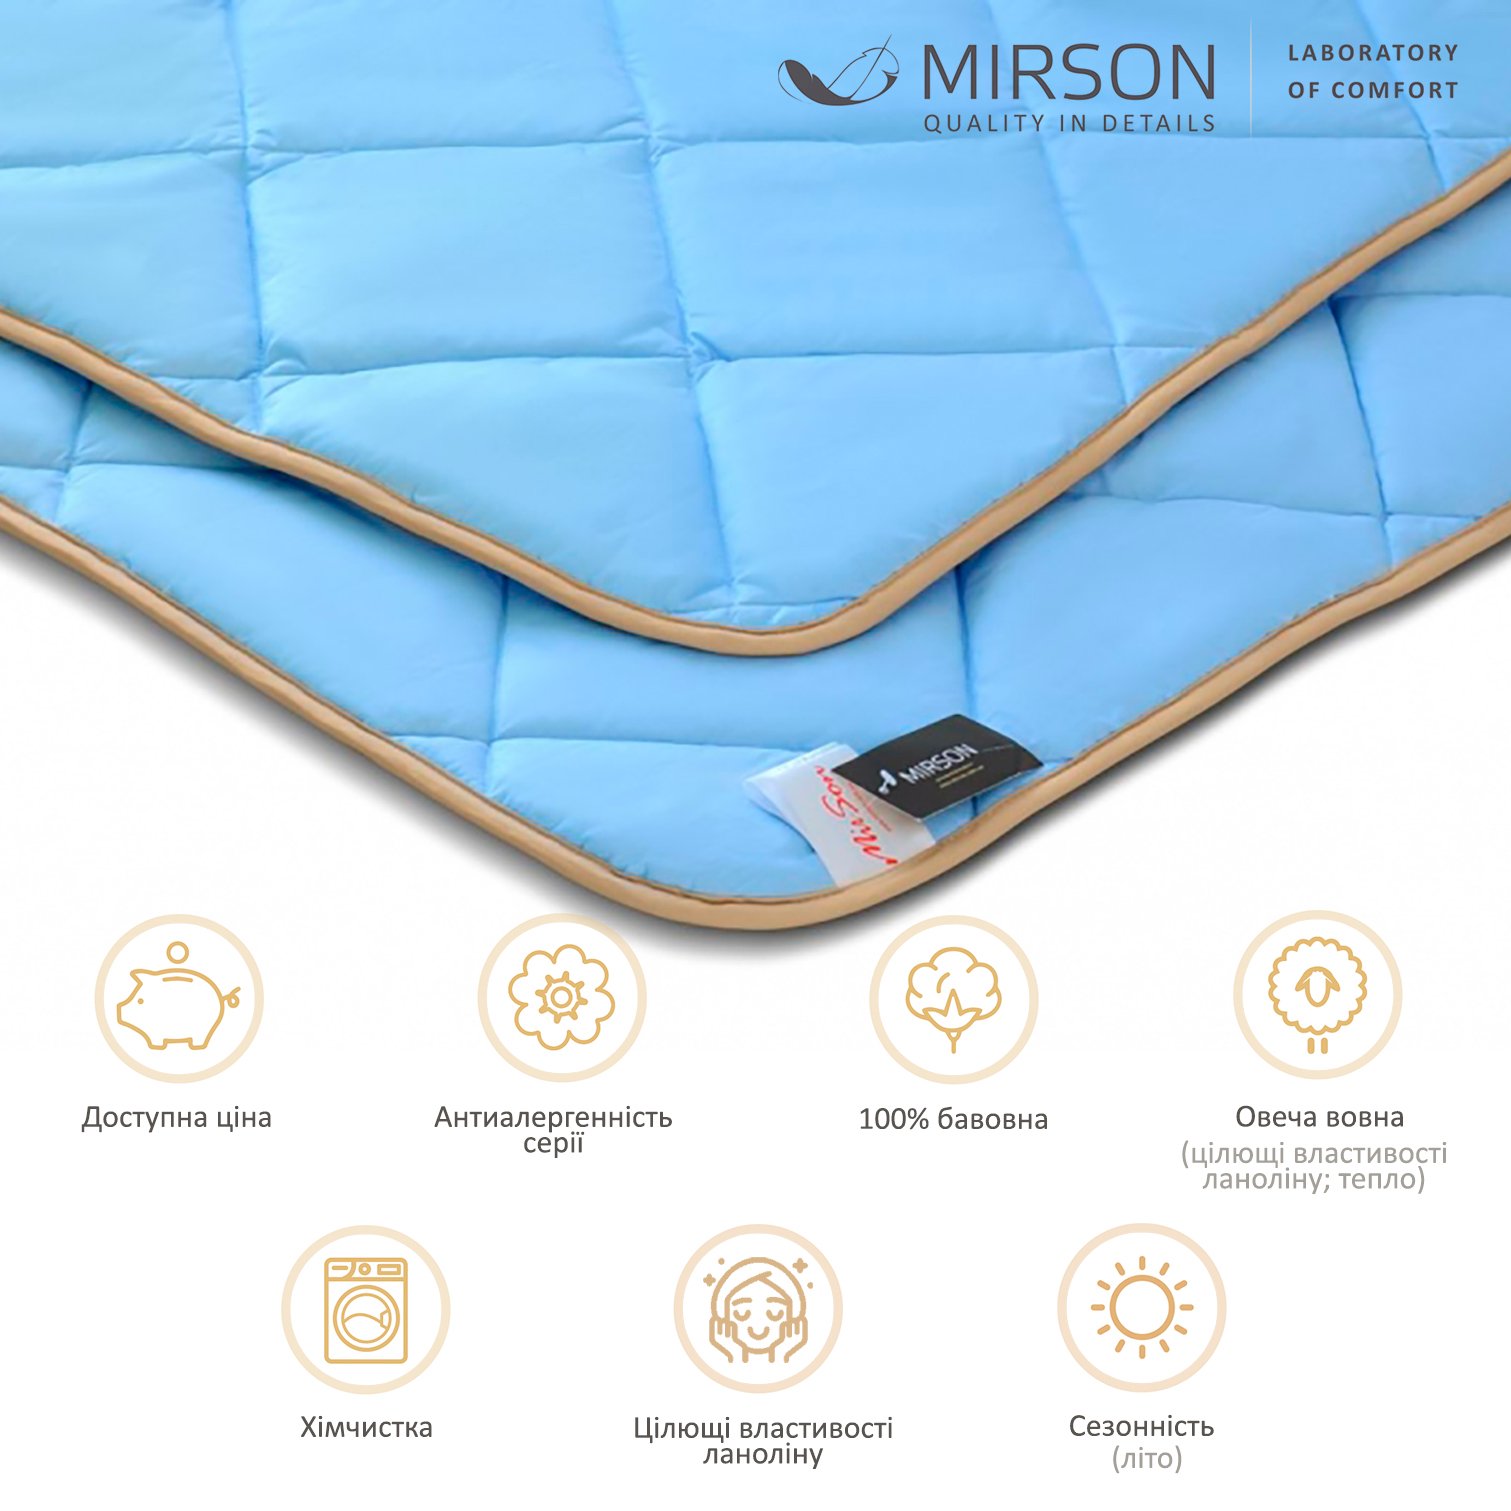 Одеяло шерстяное MirSon Valentino № 0336, летнее, 200x220 см, голубое - фото 5